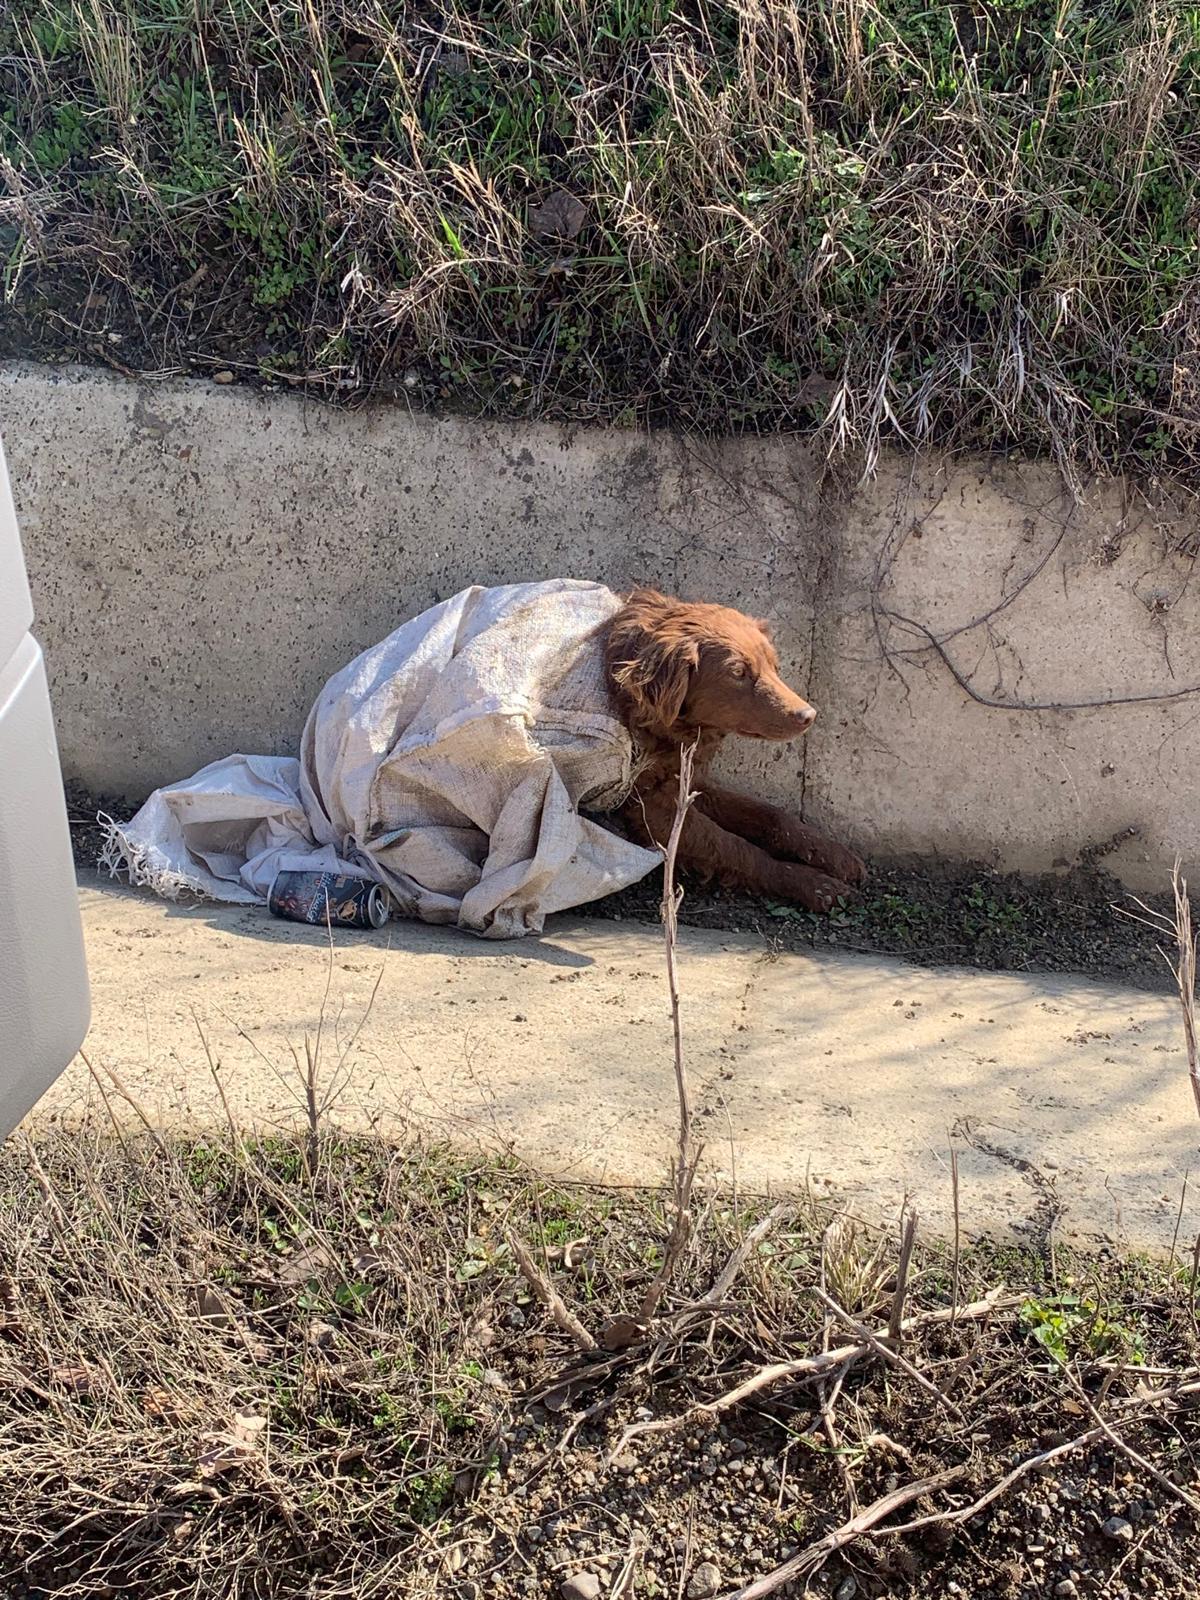 Un echipaj SMURD care se întorcea din misiune a salvat un căţel abandonat pe marginea drumului, în Botoşani. Animalul era aruncat într-un sac legat